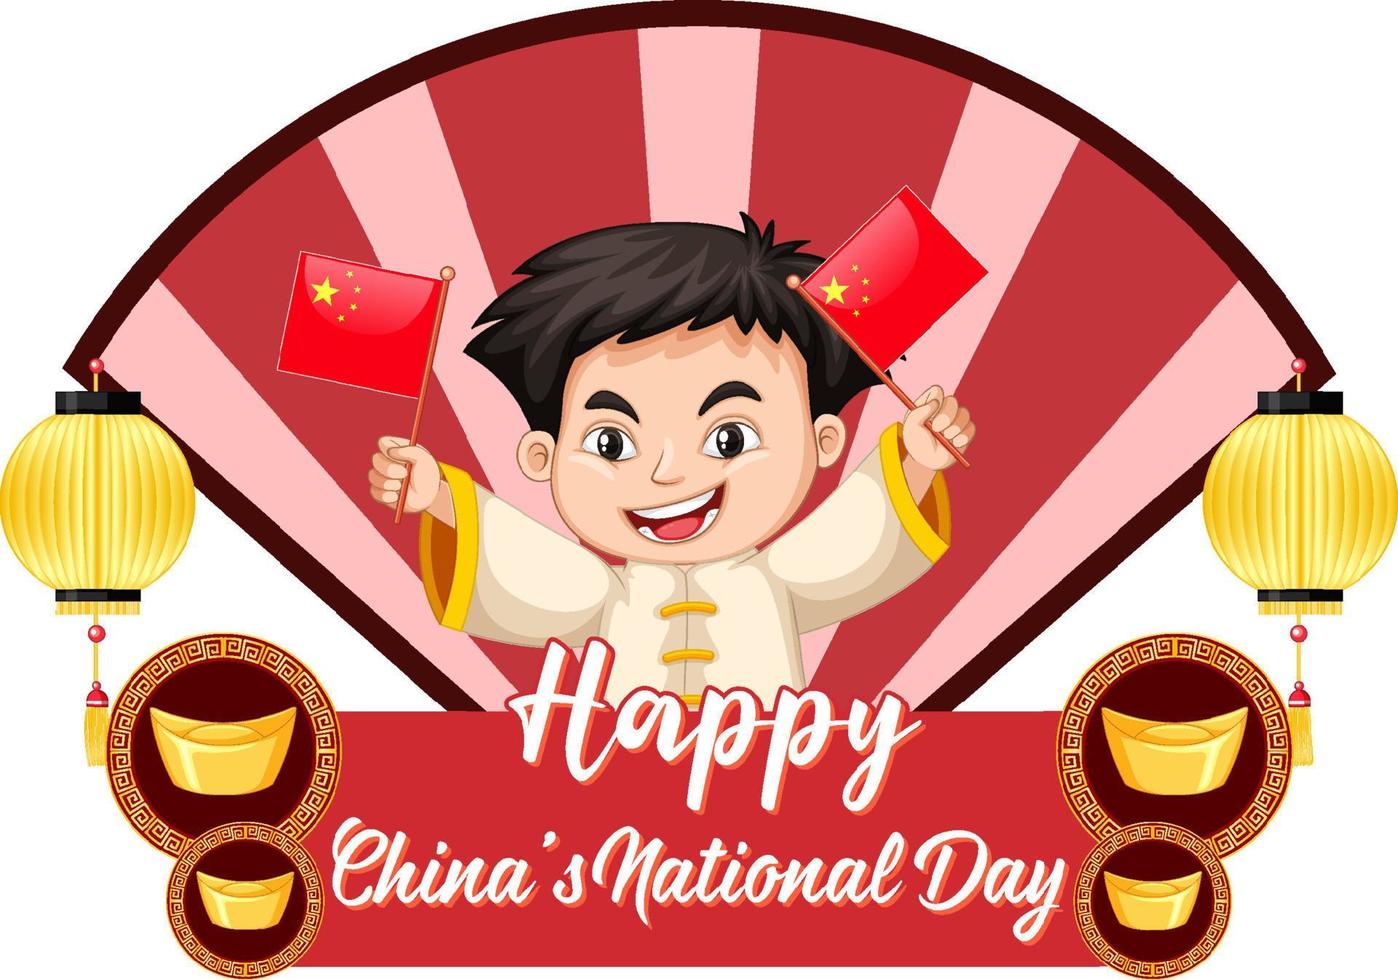 banner feliz do dia nacional da China com um personagem de desenho animado de um menino chinês vetor